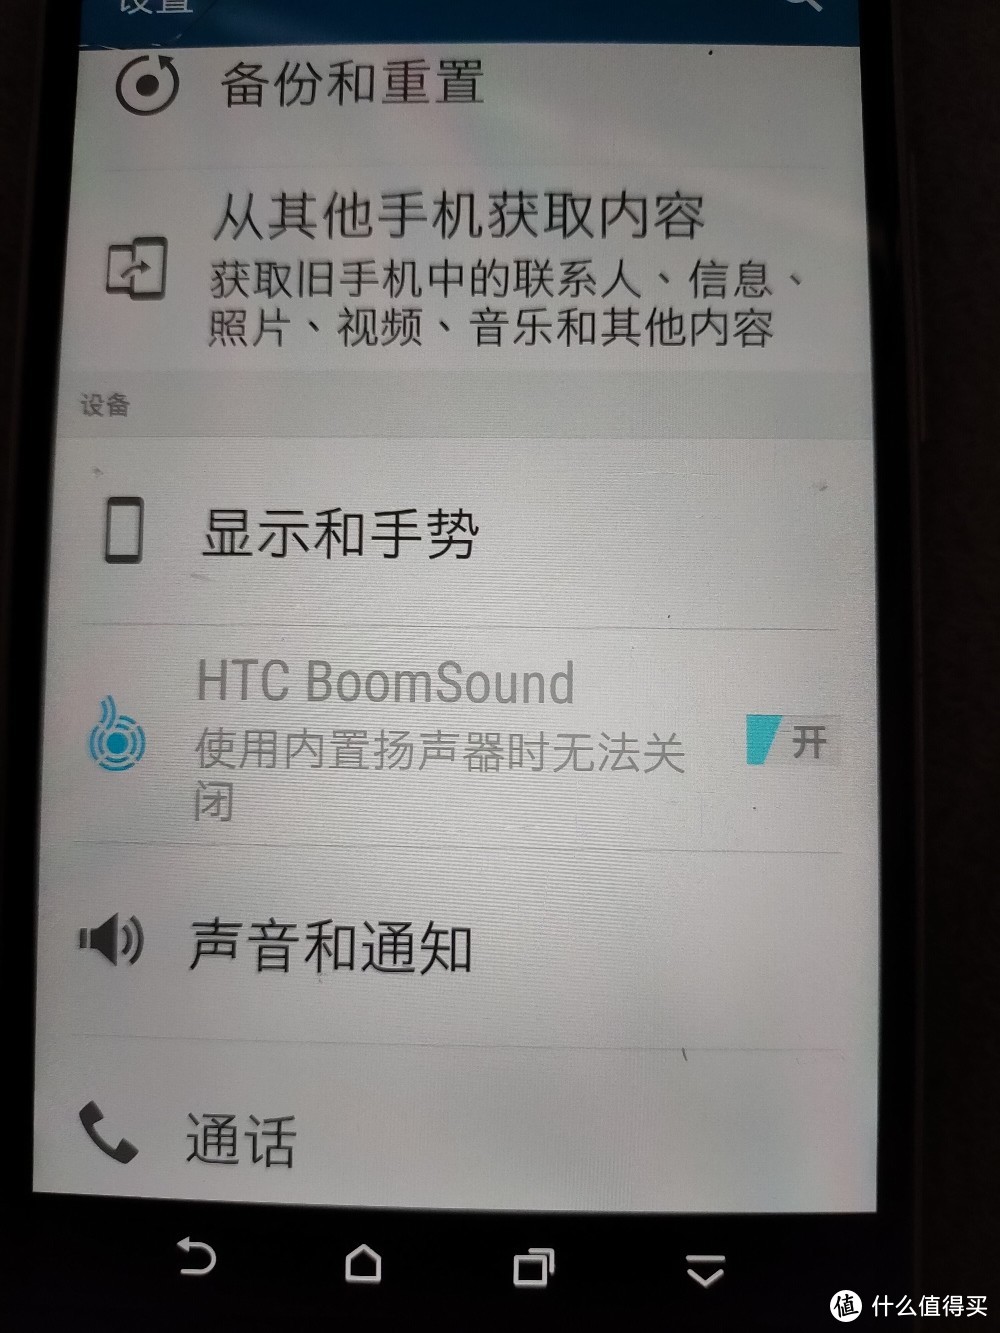 设置里的boomsound是htc特色功能。